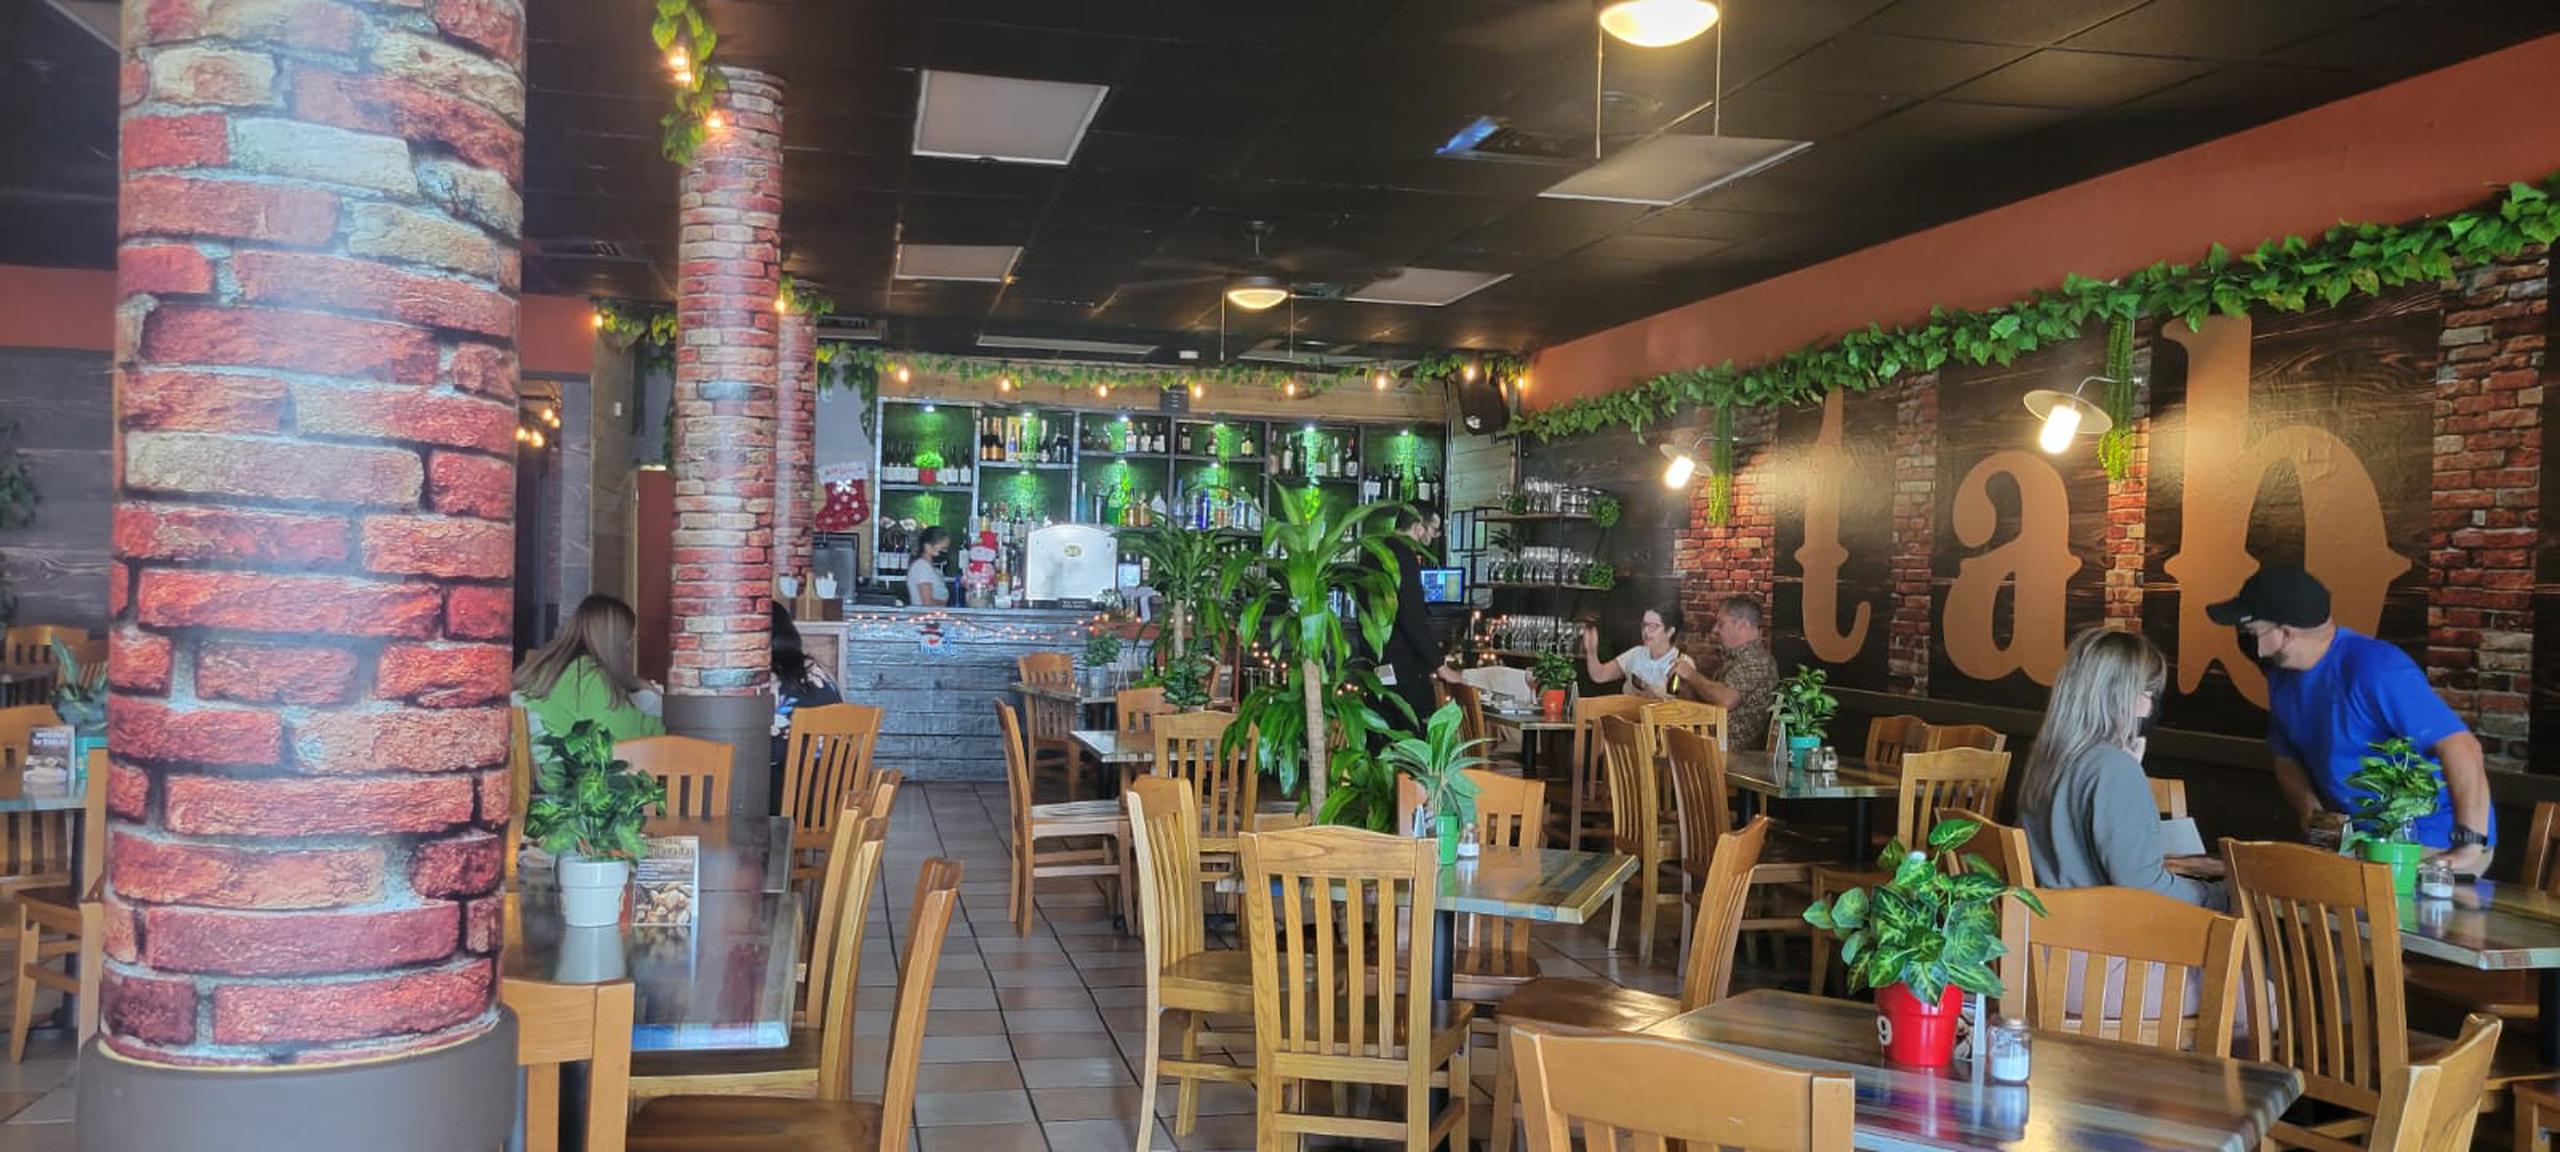 El restaurante Tablas está ubicado en el casco urbano de Ponce.